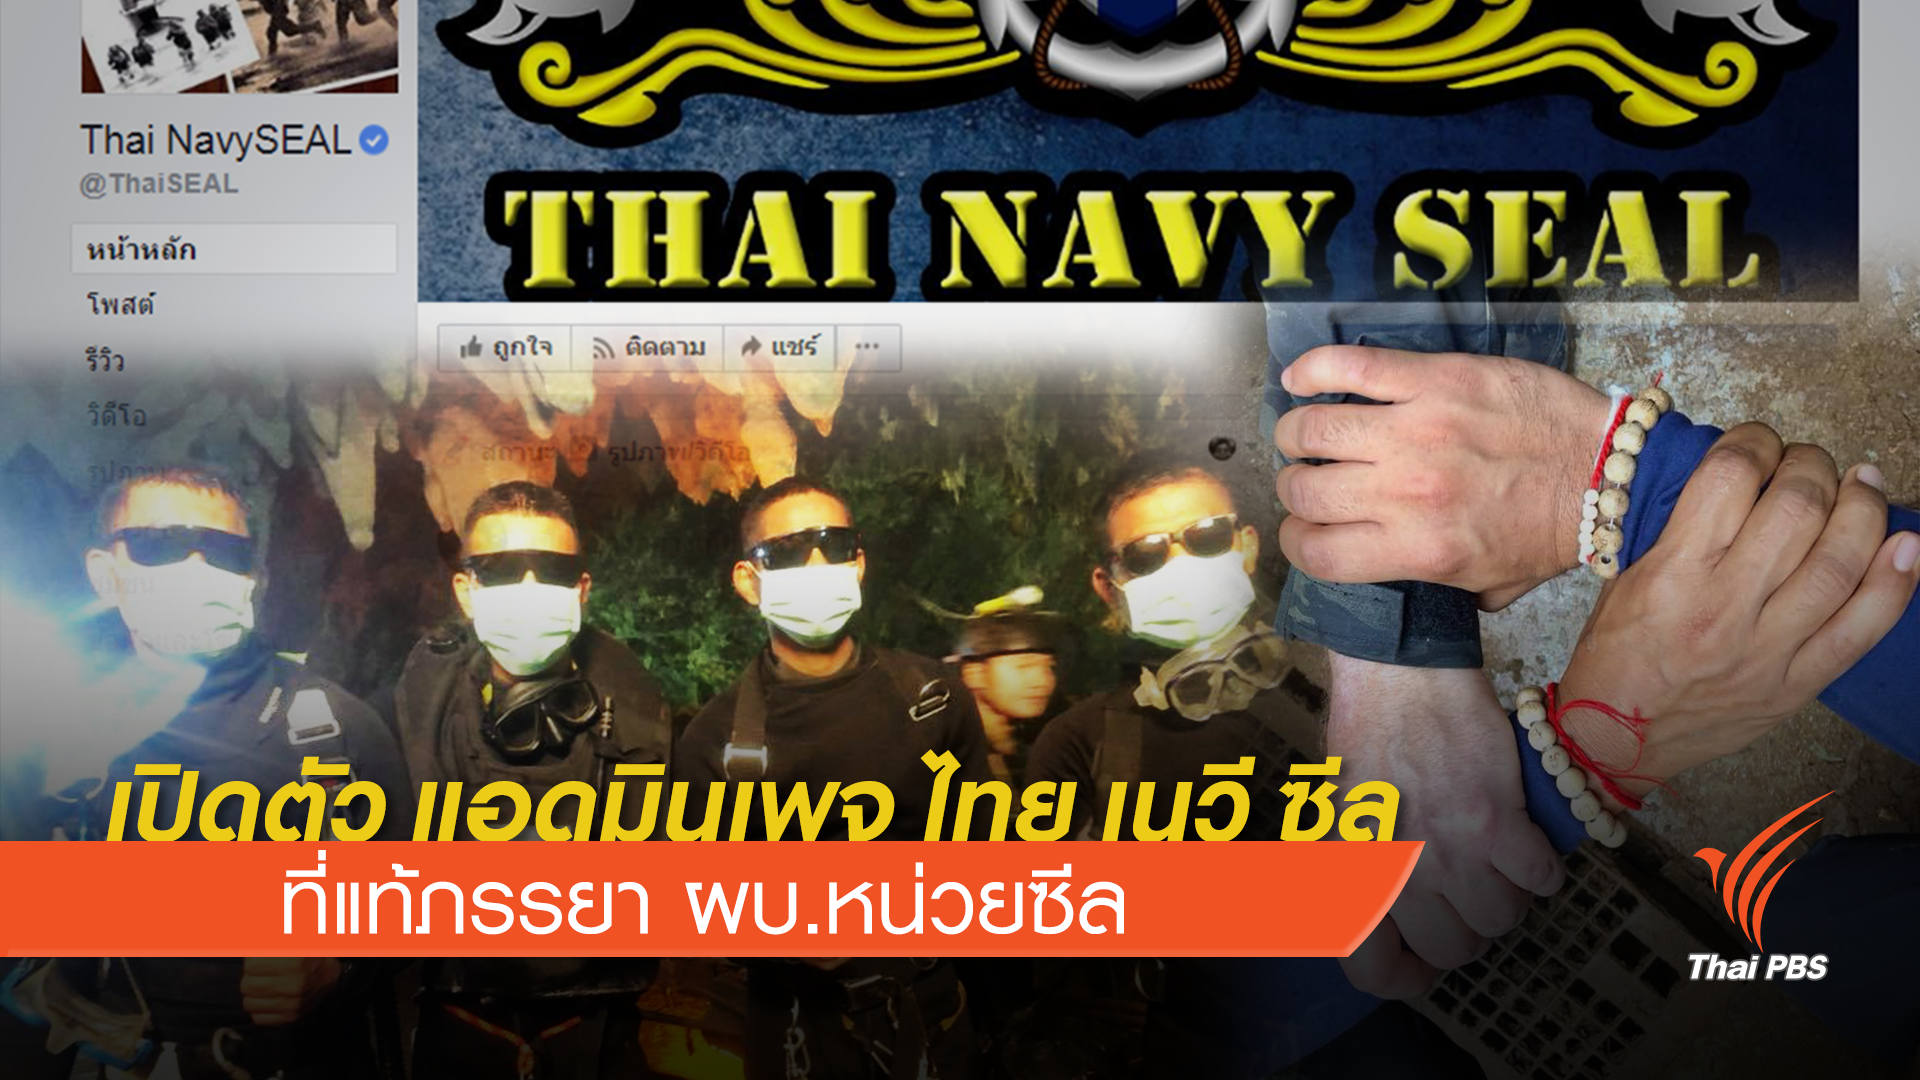 เปิดตัว แอดมินเพจ Thai NavySEAL ที่แท้ภรรยา ผบ.หน่วยซีล